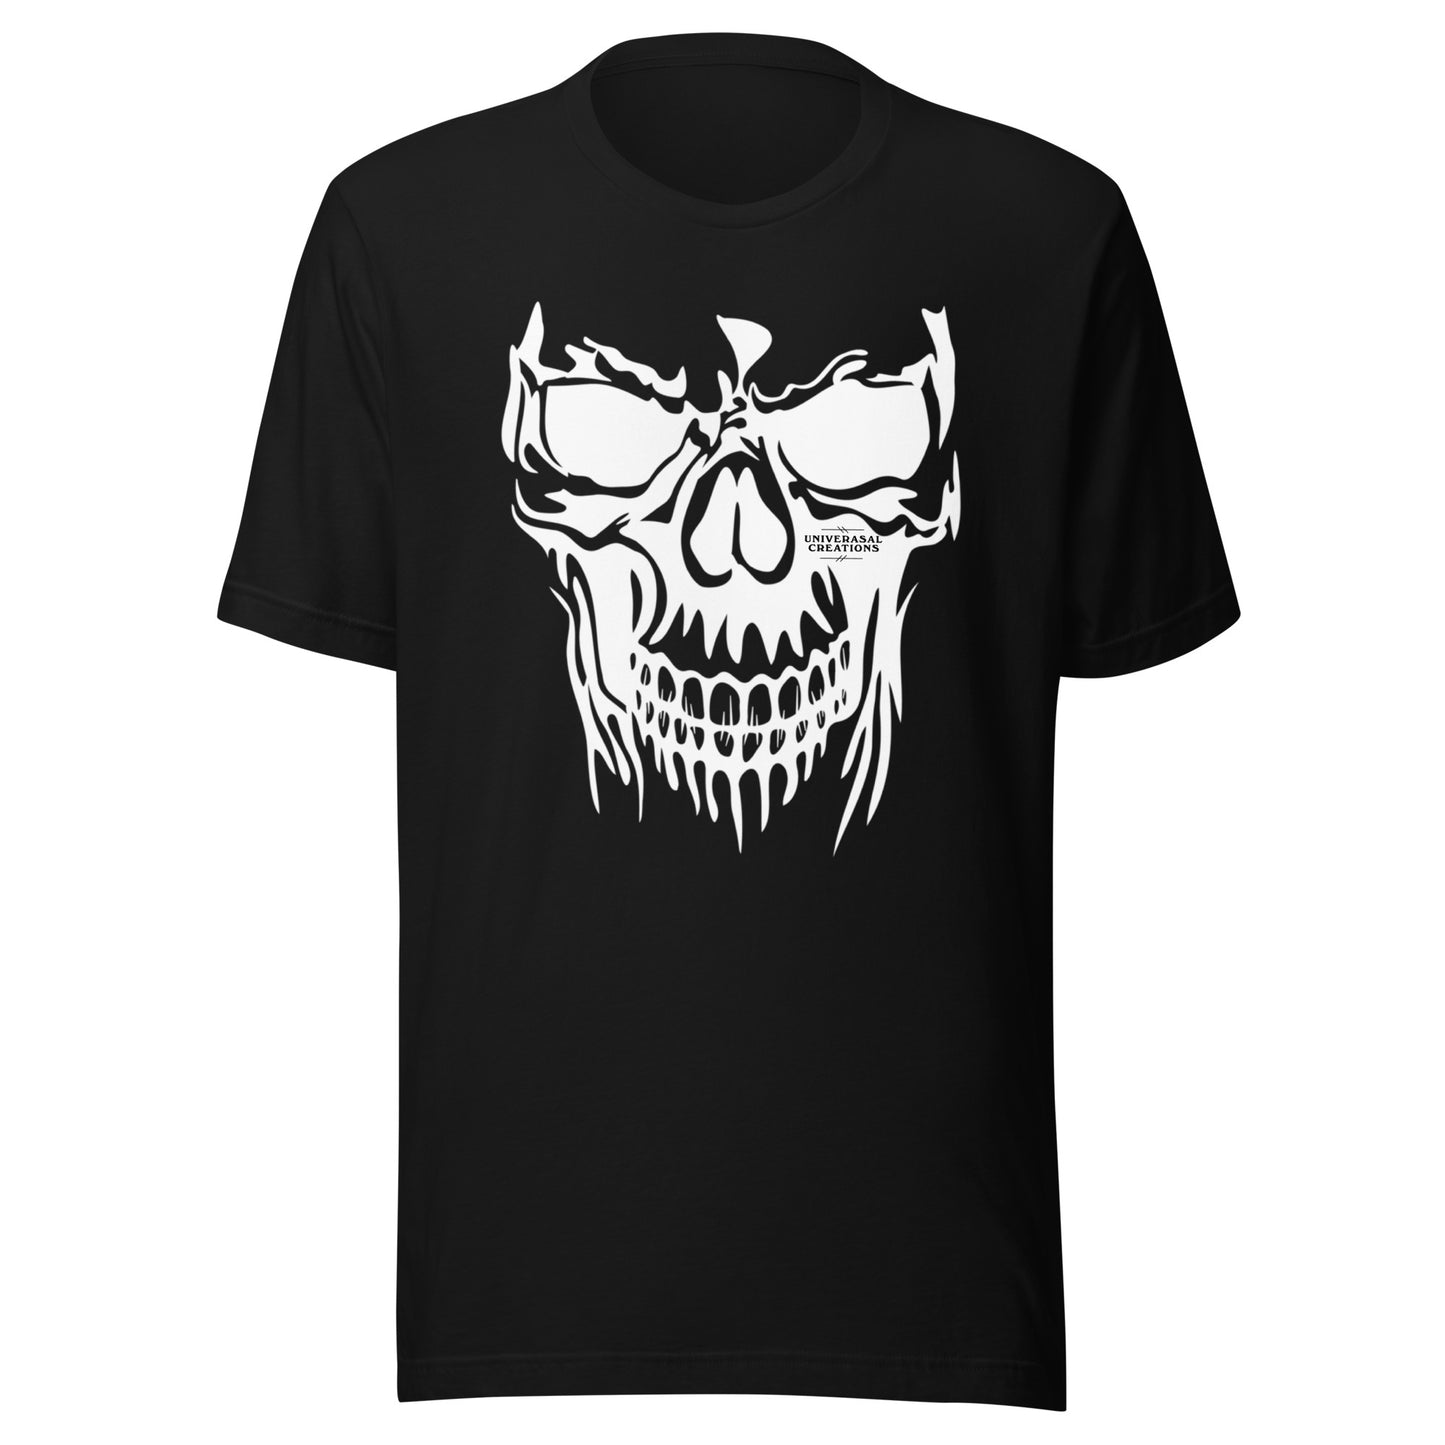 Soul Skull t-shirt